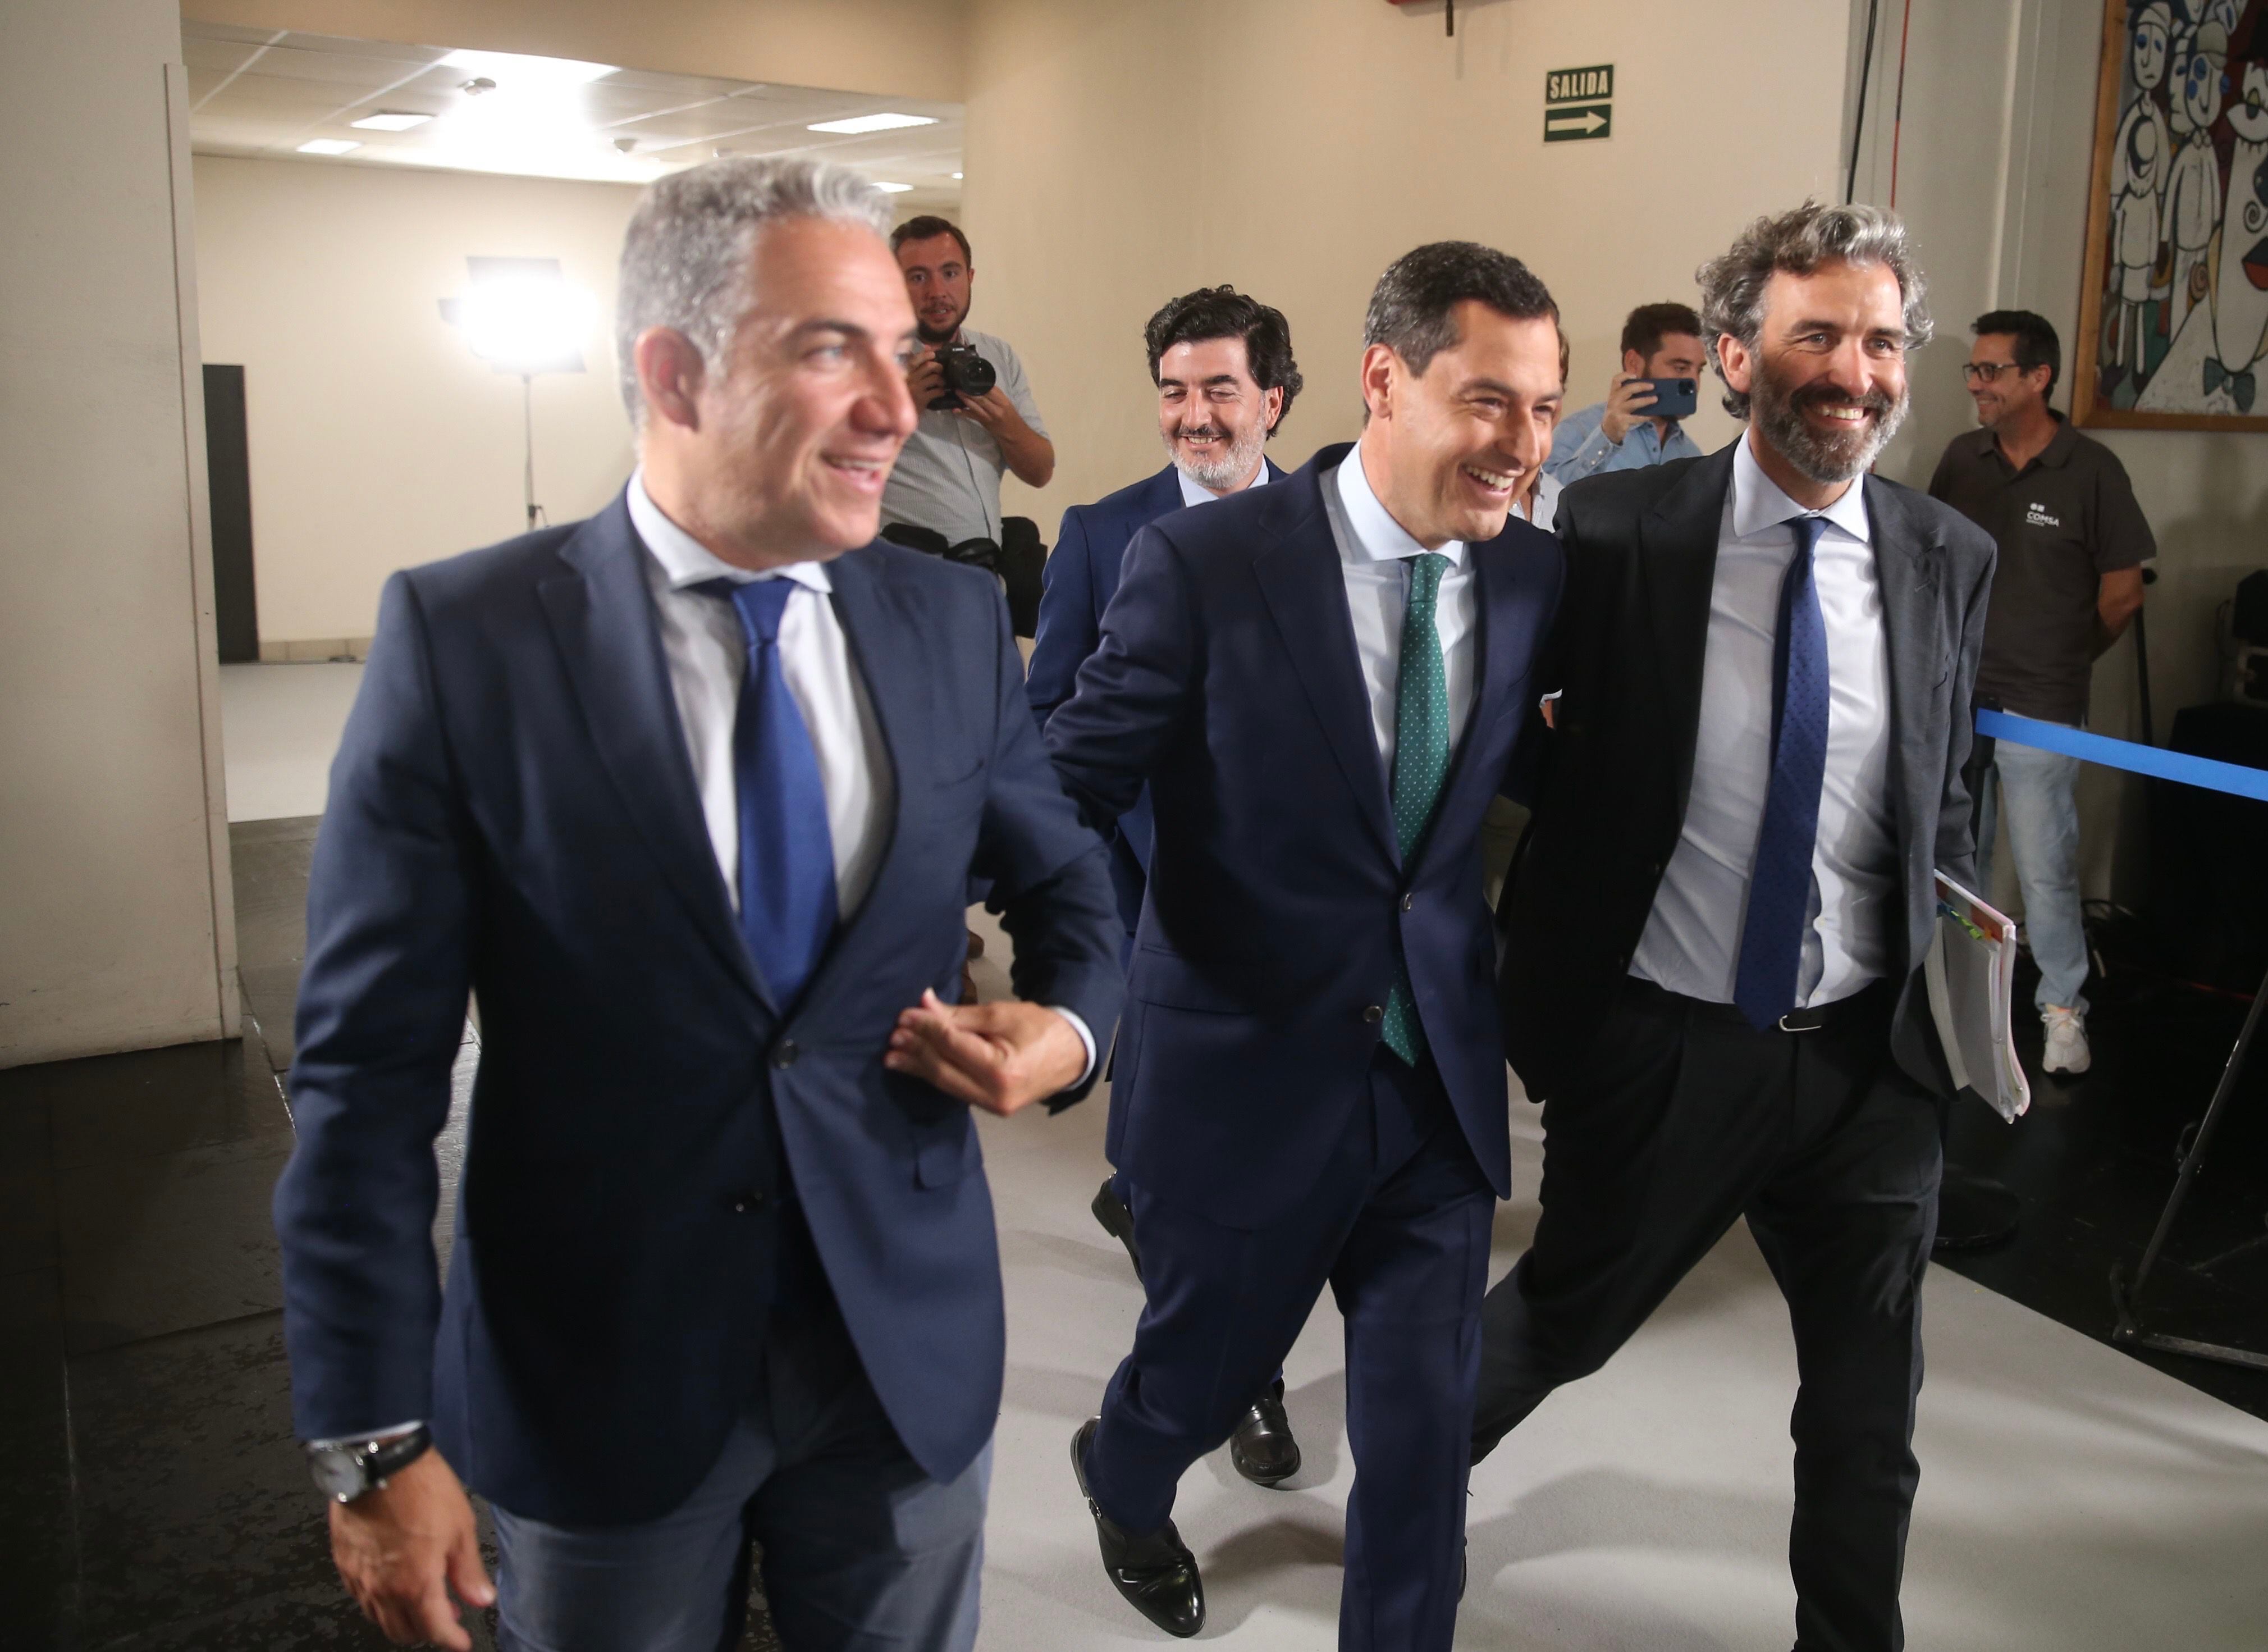 El candidato del PP, Juan Manuel Moreno (en el centro), sale del estudio de RTVE en Sevilla acompañado de su antiguo portavoz y consejero de Presidencia, Elías Bendodo (a la izquierda).